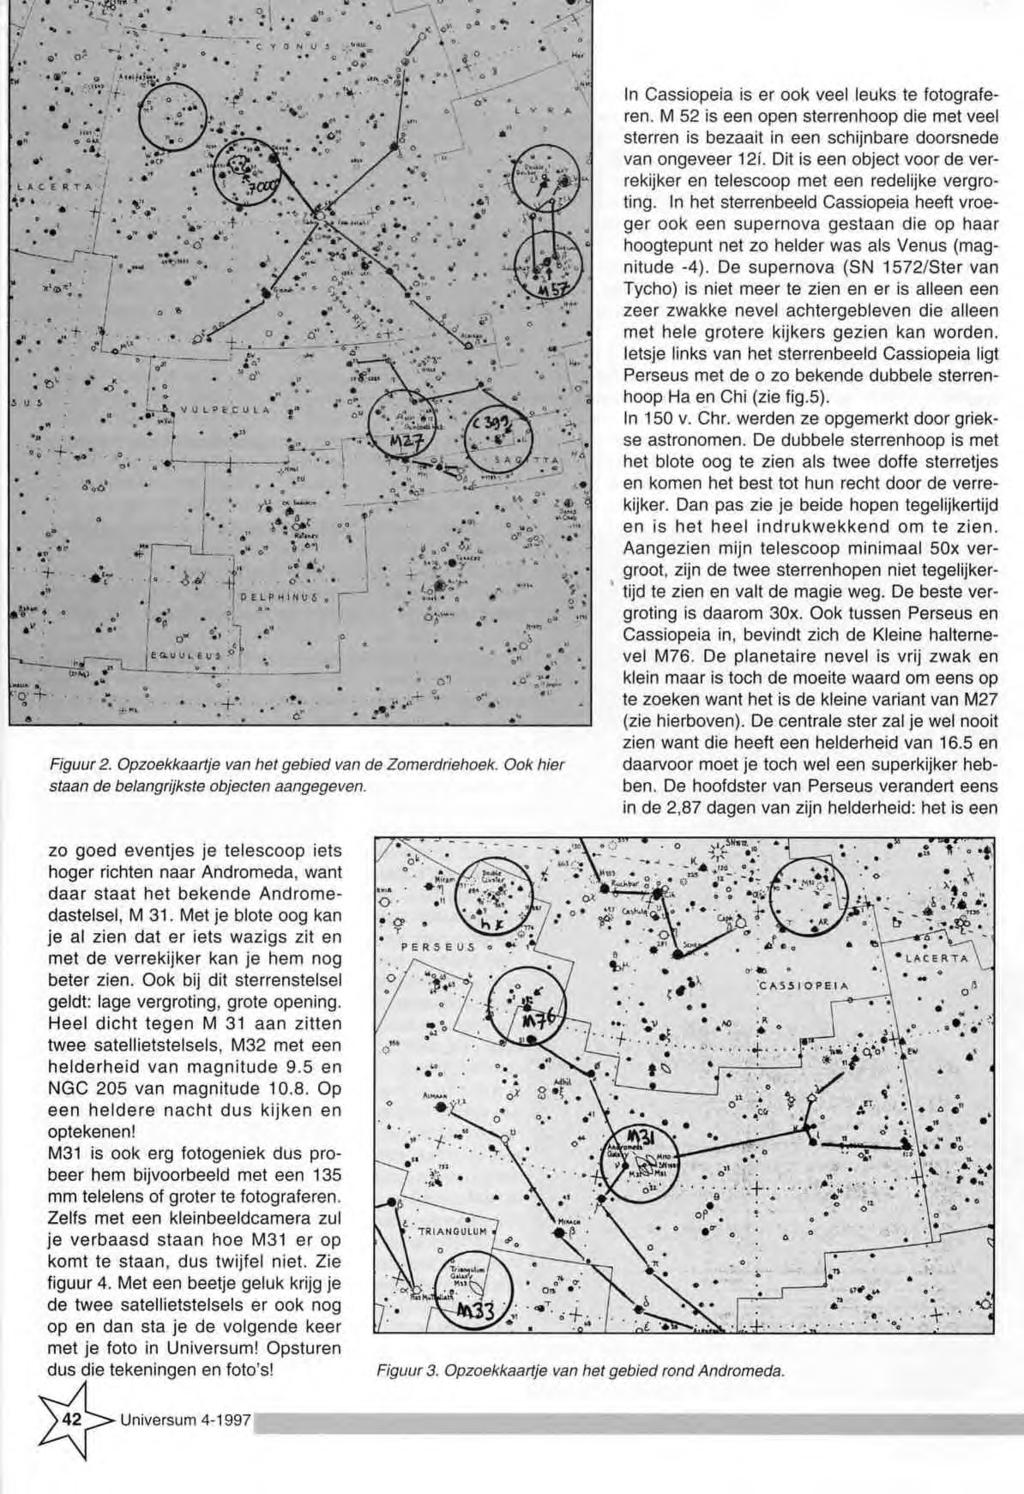 Figuur 2. Opzoekkaartje van het gebied van de Zomerdriehoek. Ook hier staan de belangrijkste objecten aangegeven. In C assiopeia is er ook veel leuks te fotograferen.